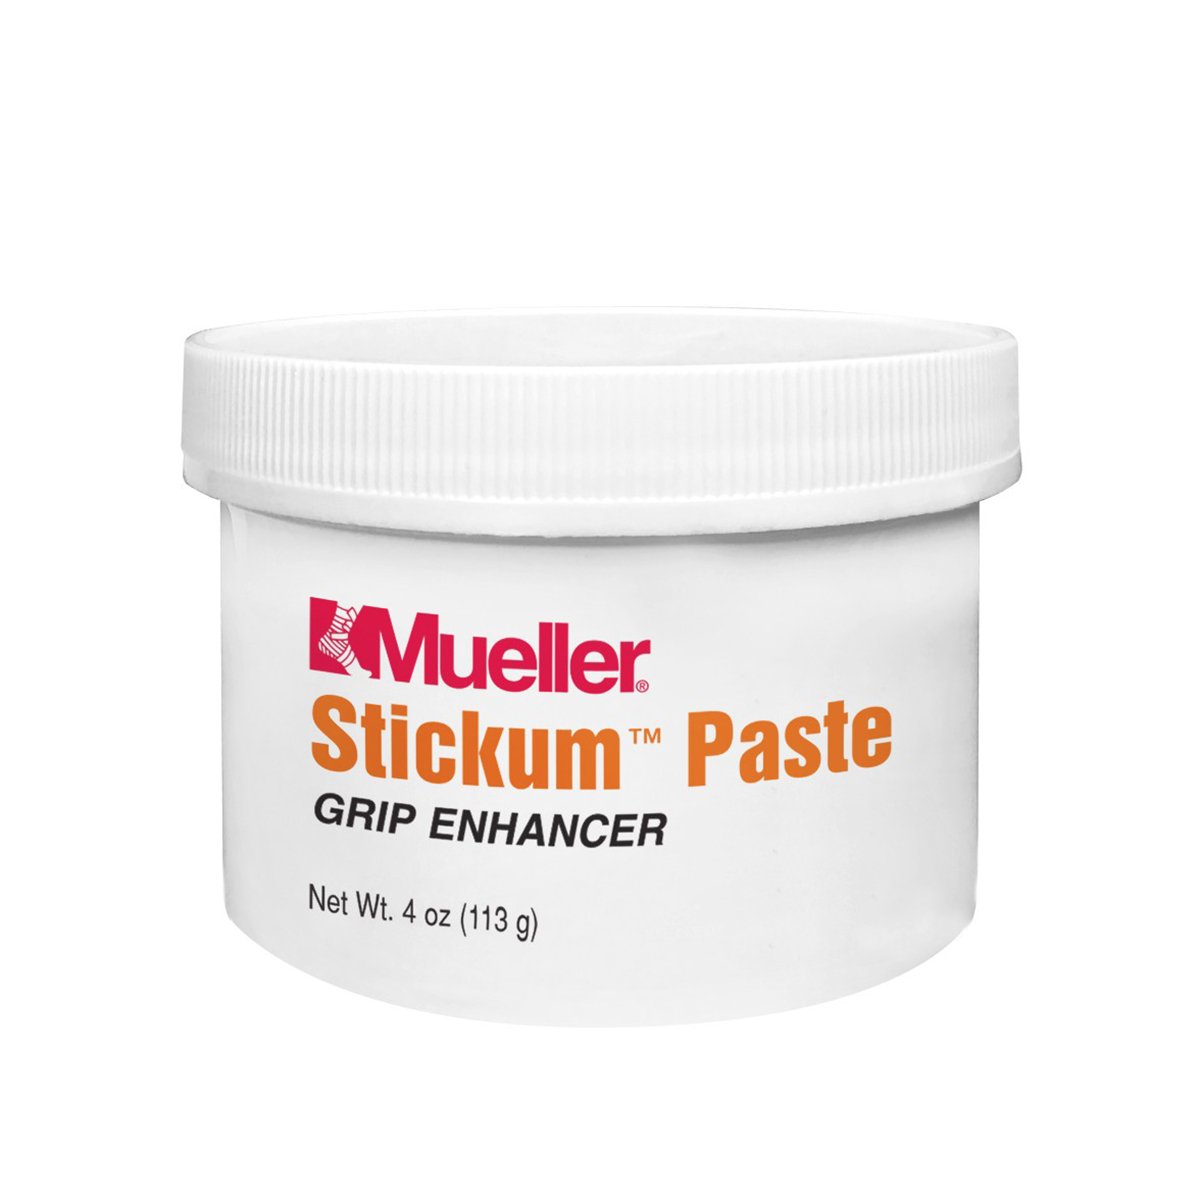 Mueller Stickum Paste Grip Enhancer